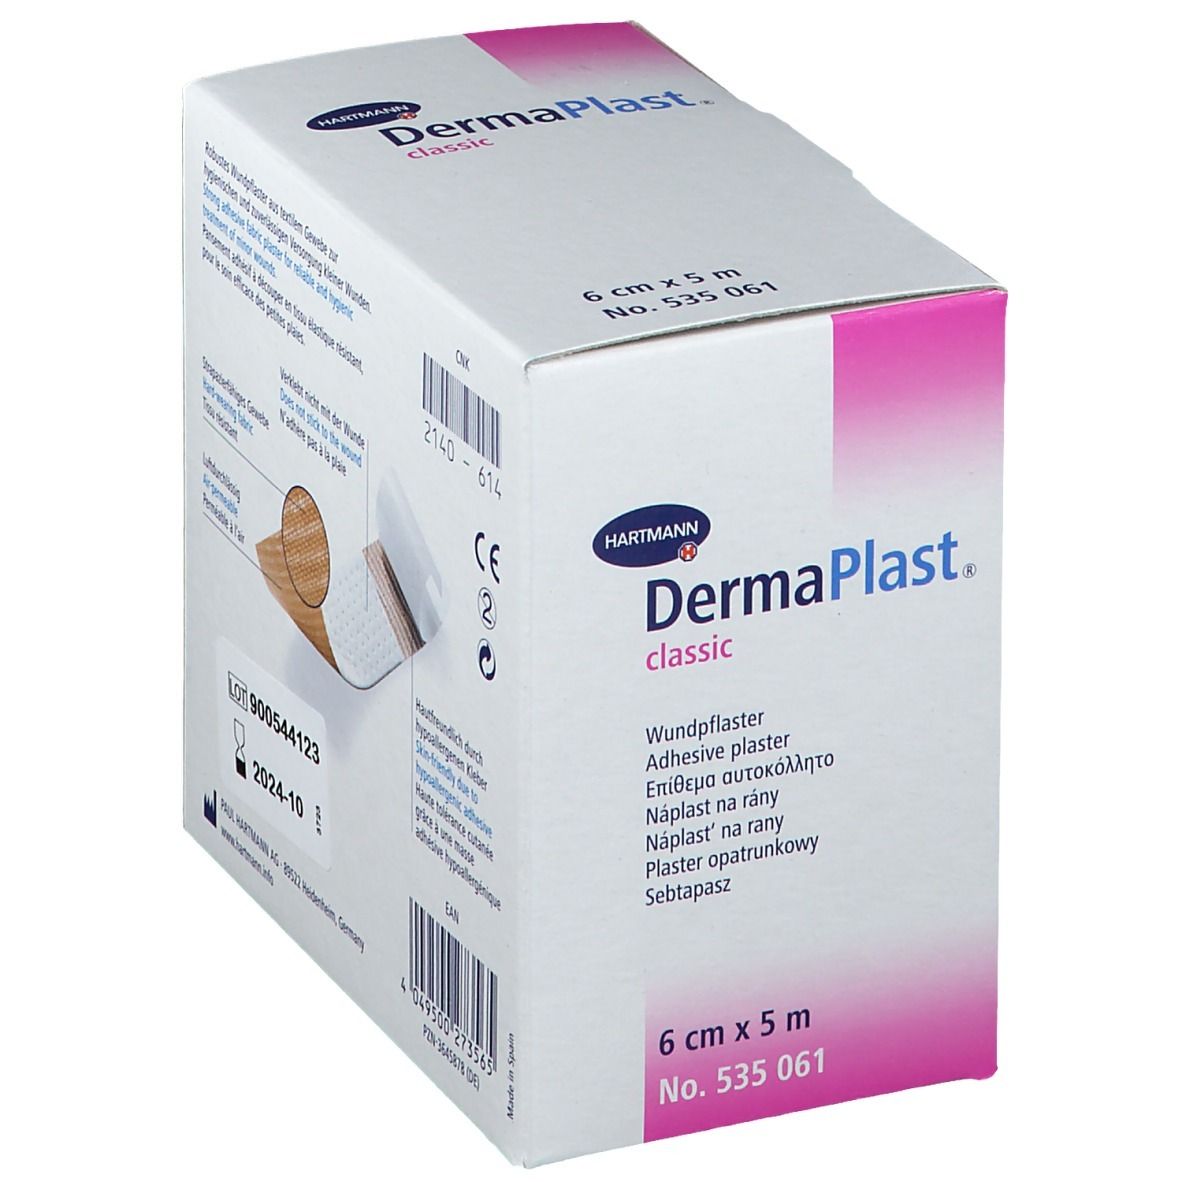 DermaPlast® classic 6 cm x 5 m